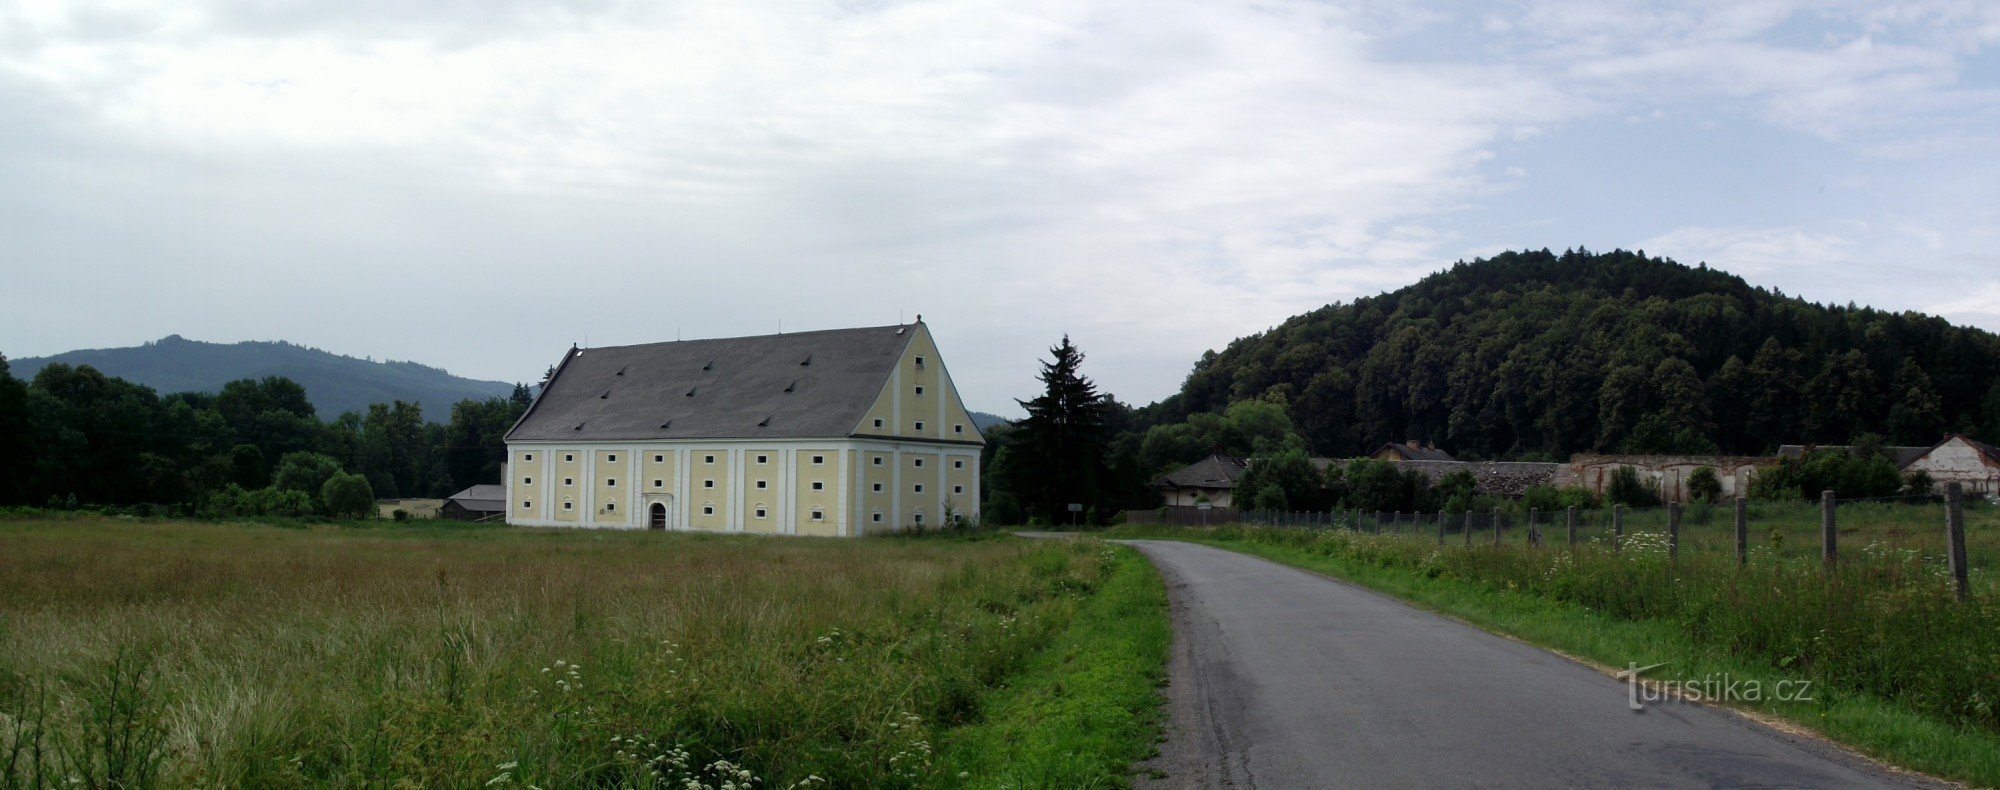 granero barroco en Velké Losiny